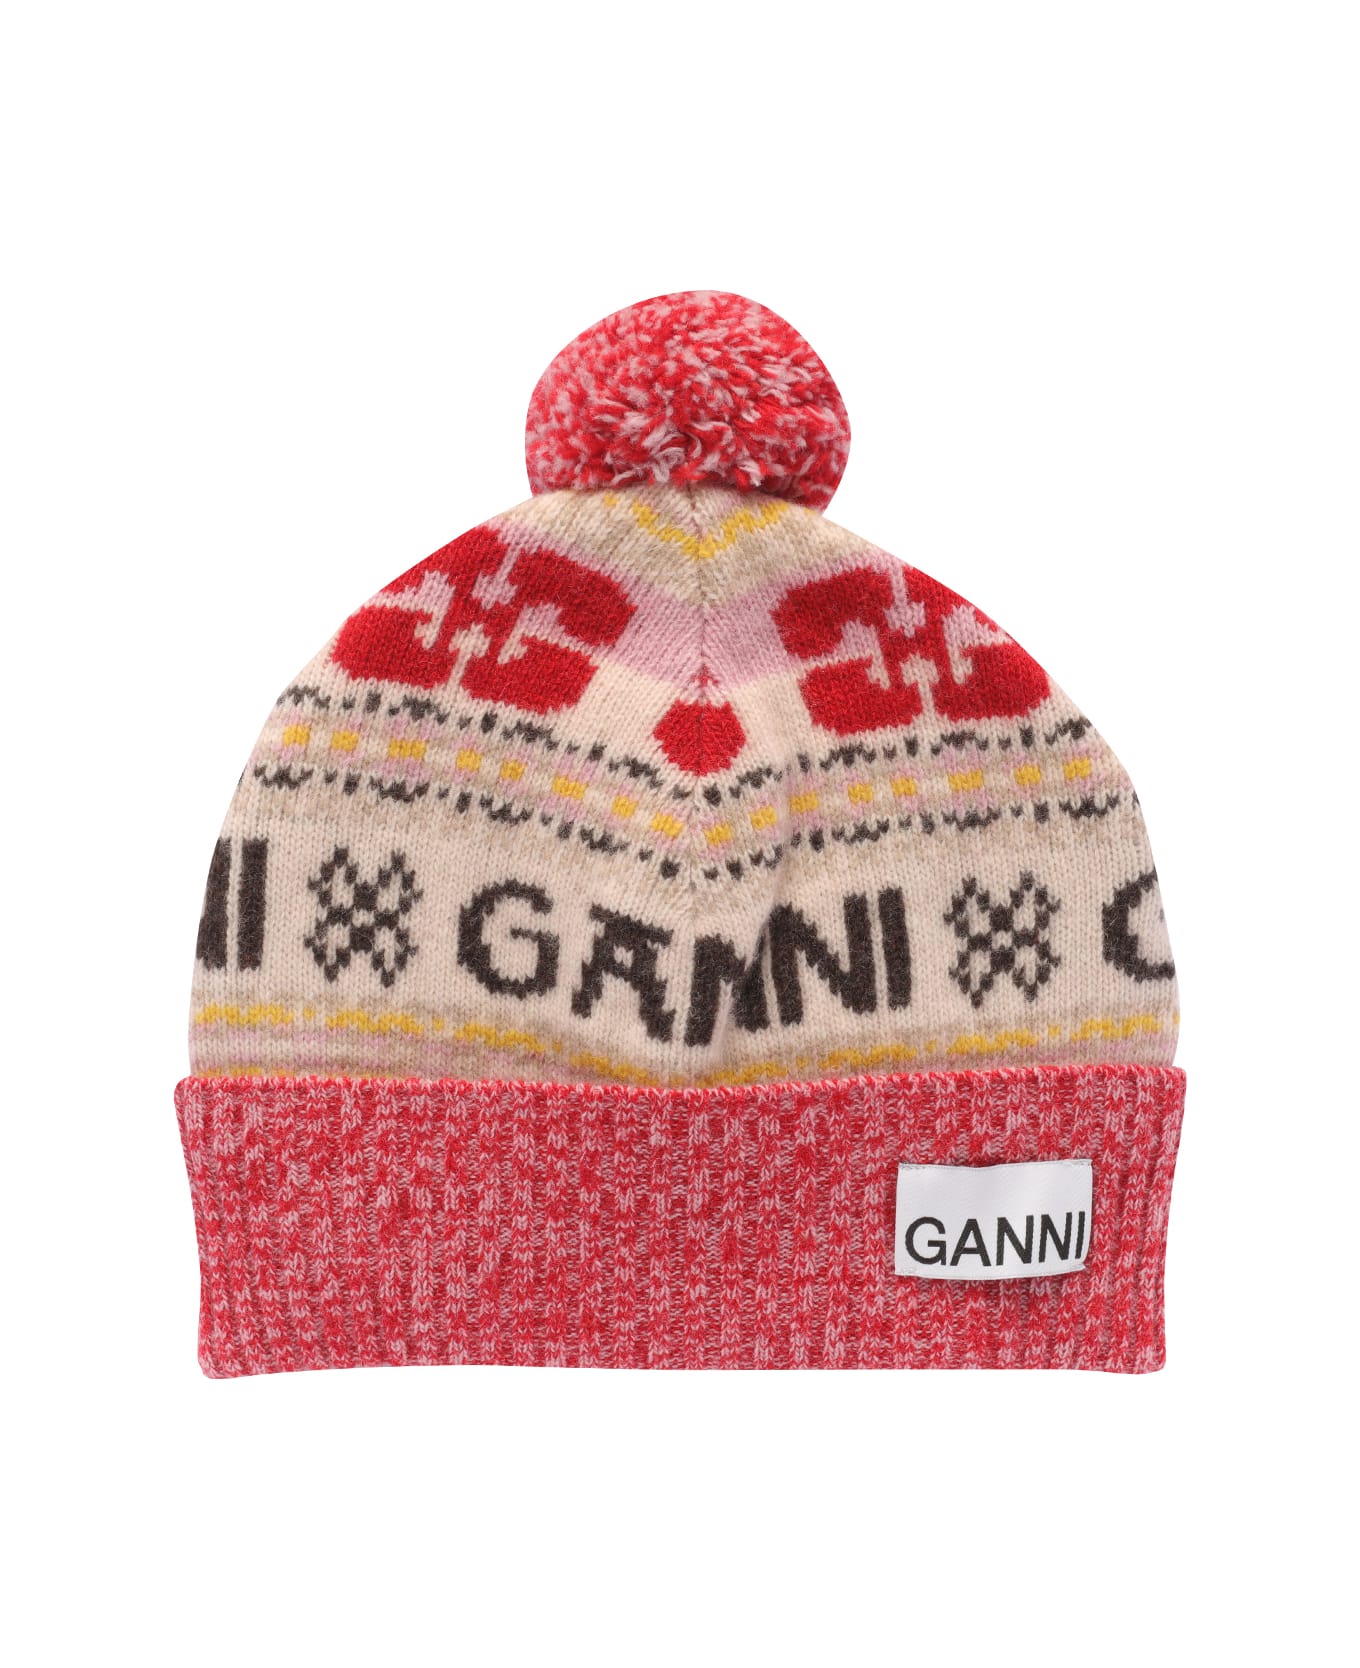 Ganni Beanie - Multicolour 帽子